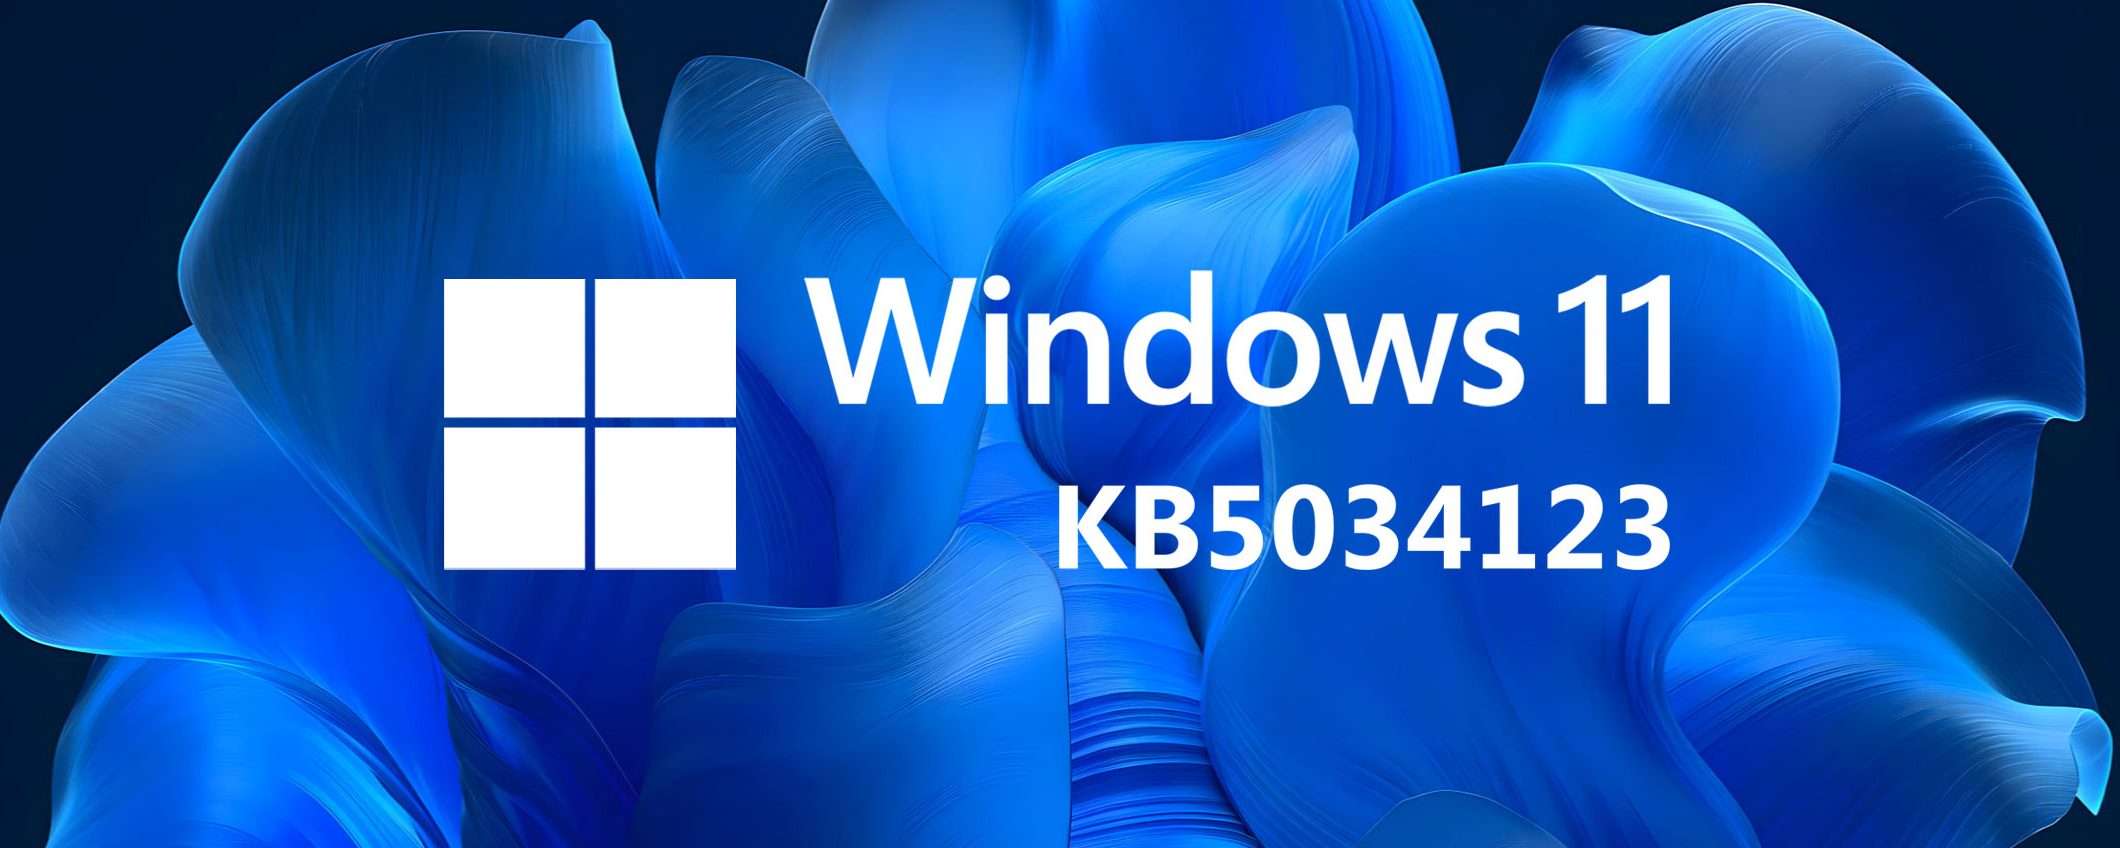 Windows 11 KB5034123: problemi di installazione